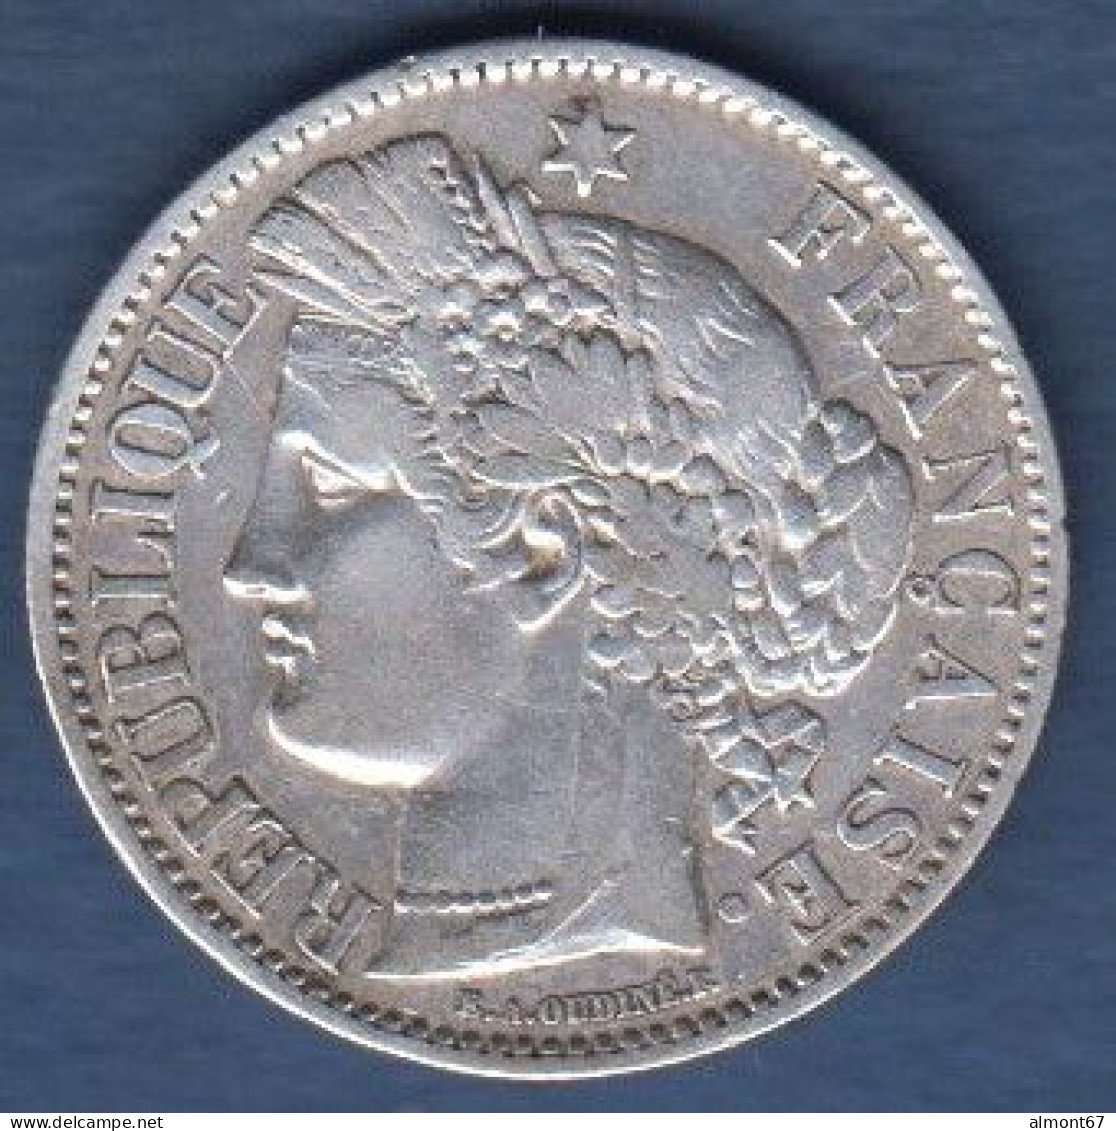 Cérès - 2 Francs 1870 A - 1870-1871 Gouvernement De La Défense Nationale